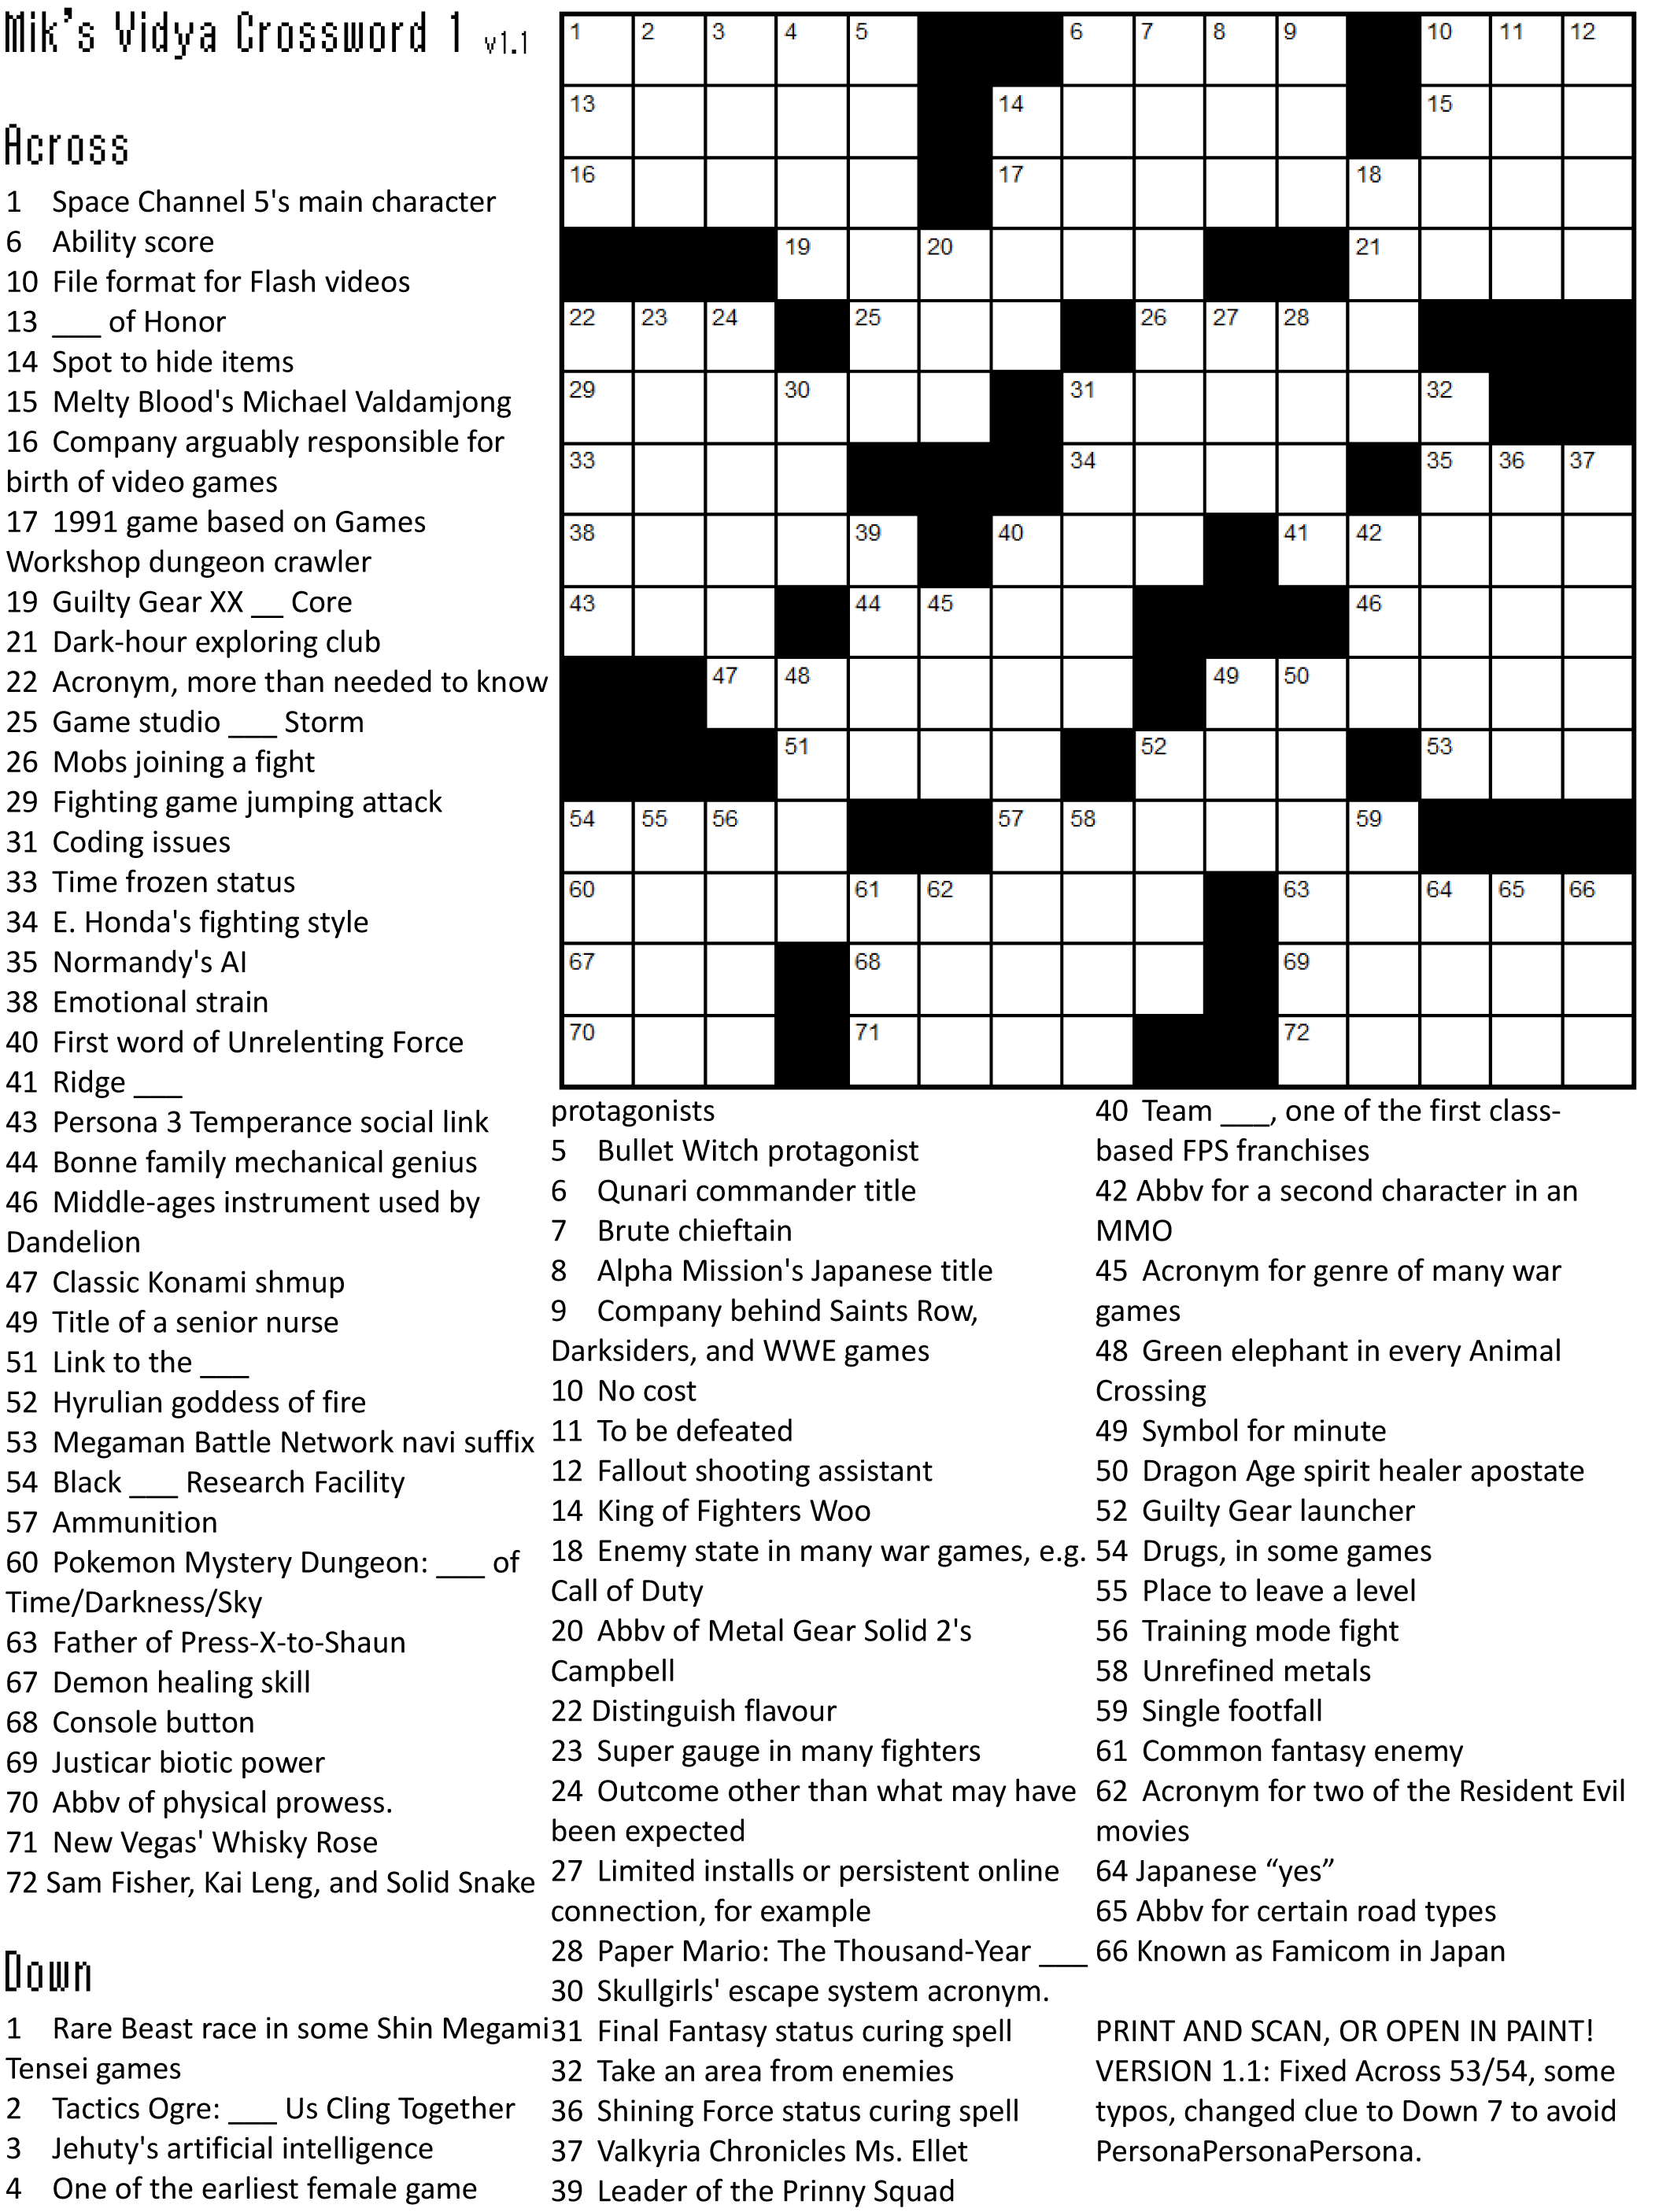 Crossword Puzzle Games | Crossword Puzzle Printable - Printable Puzzles Games